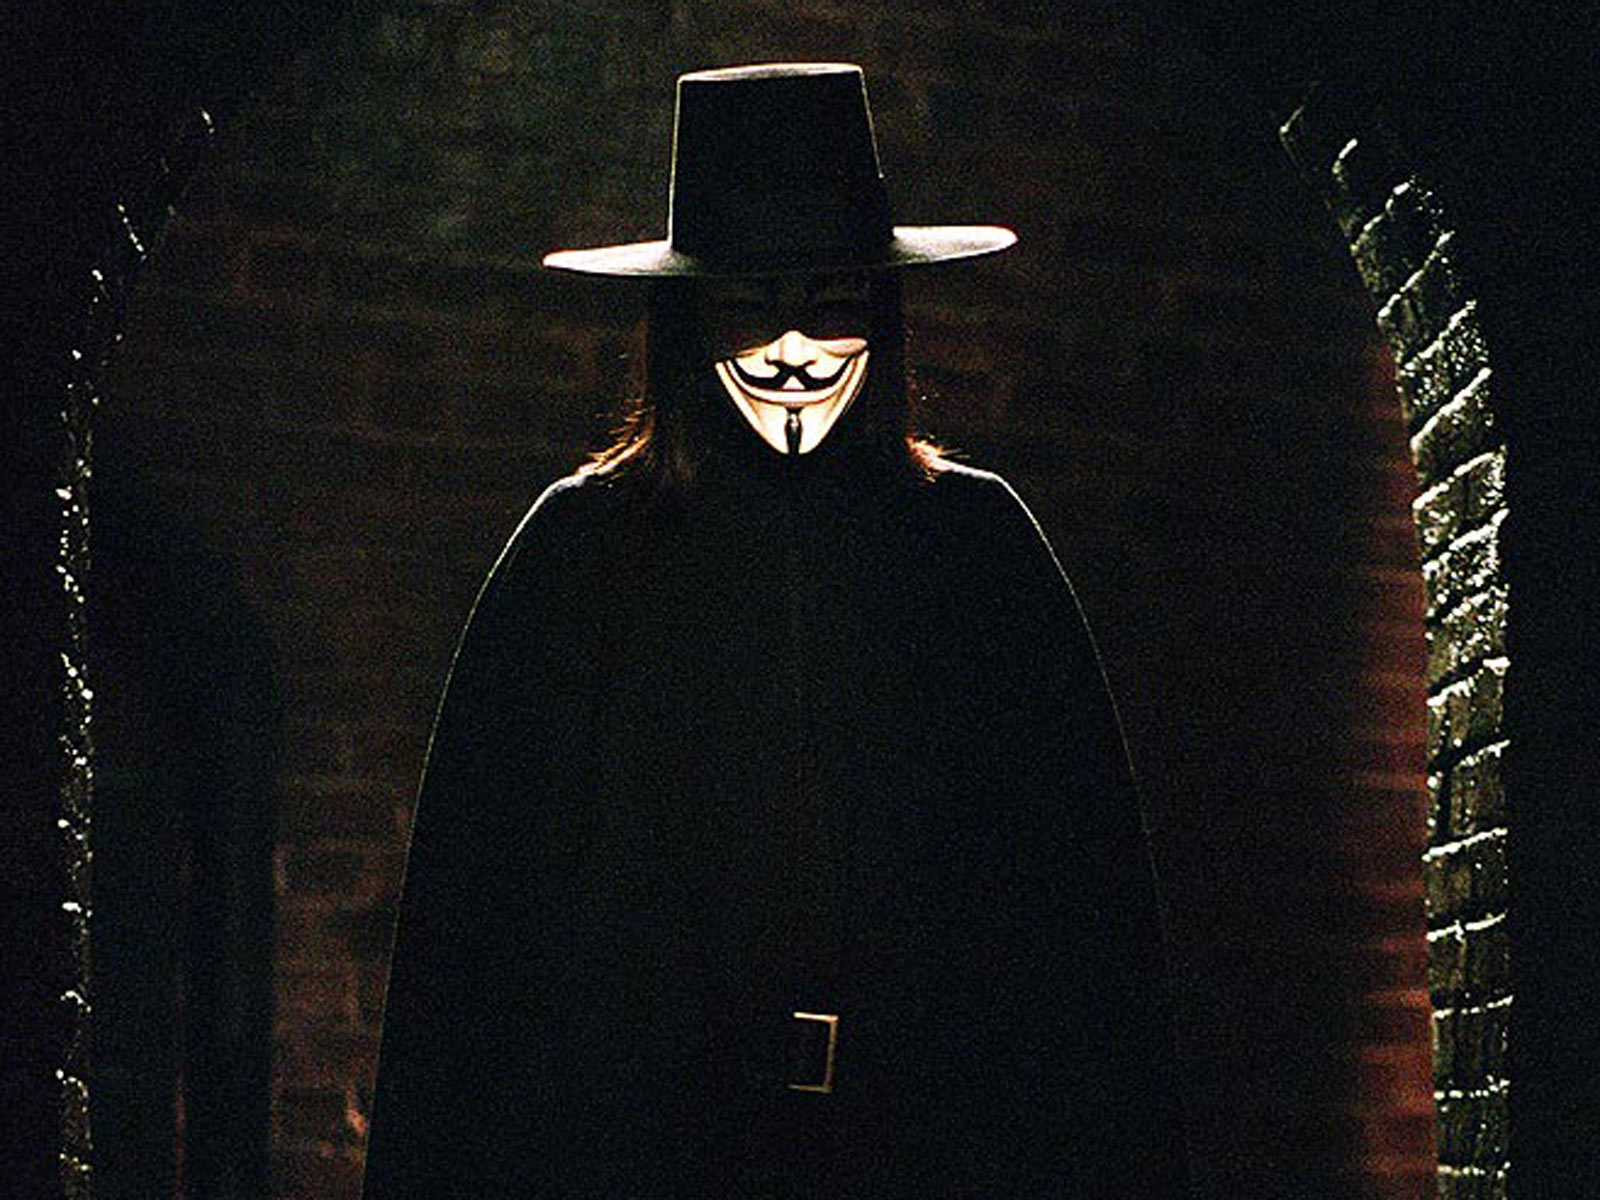 [49+] V for Vendetta Mask Wallpaper on WallpaperSafari